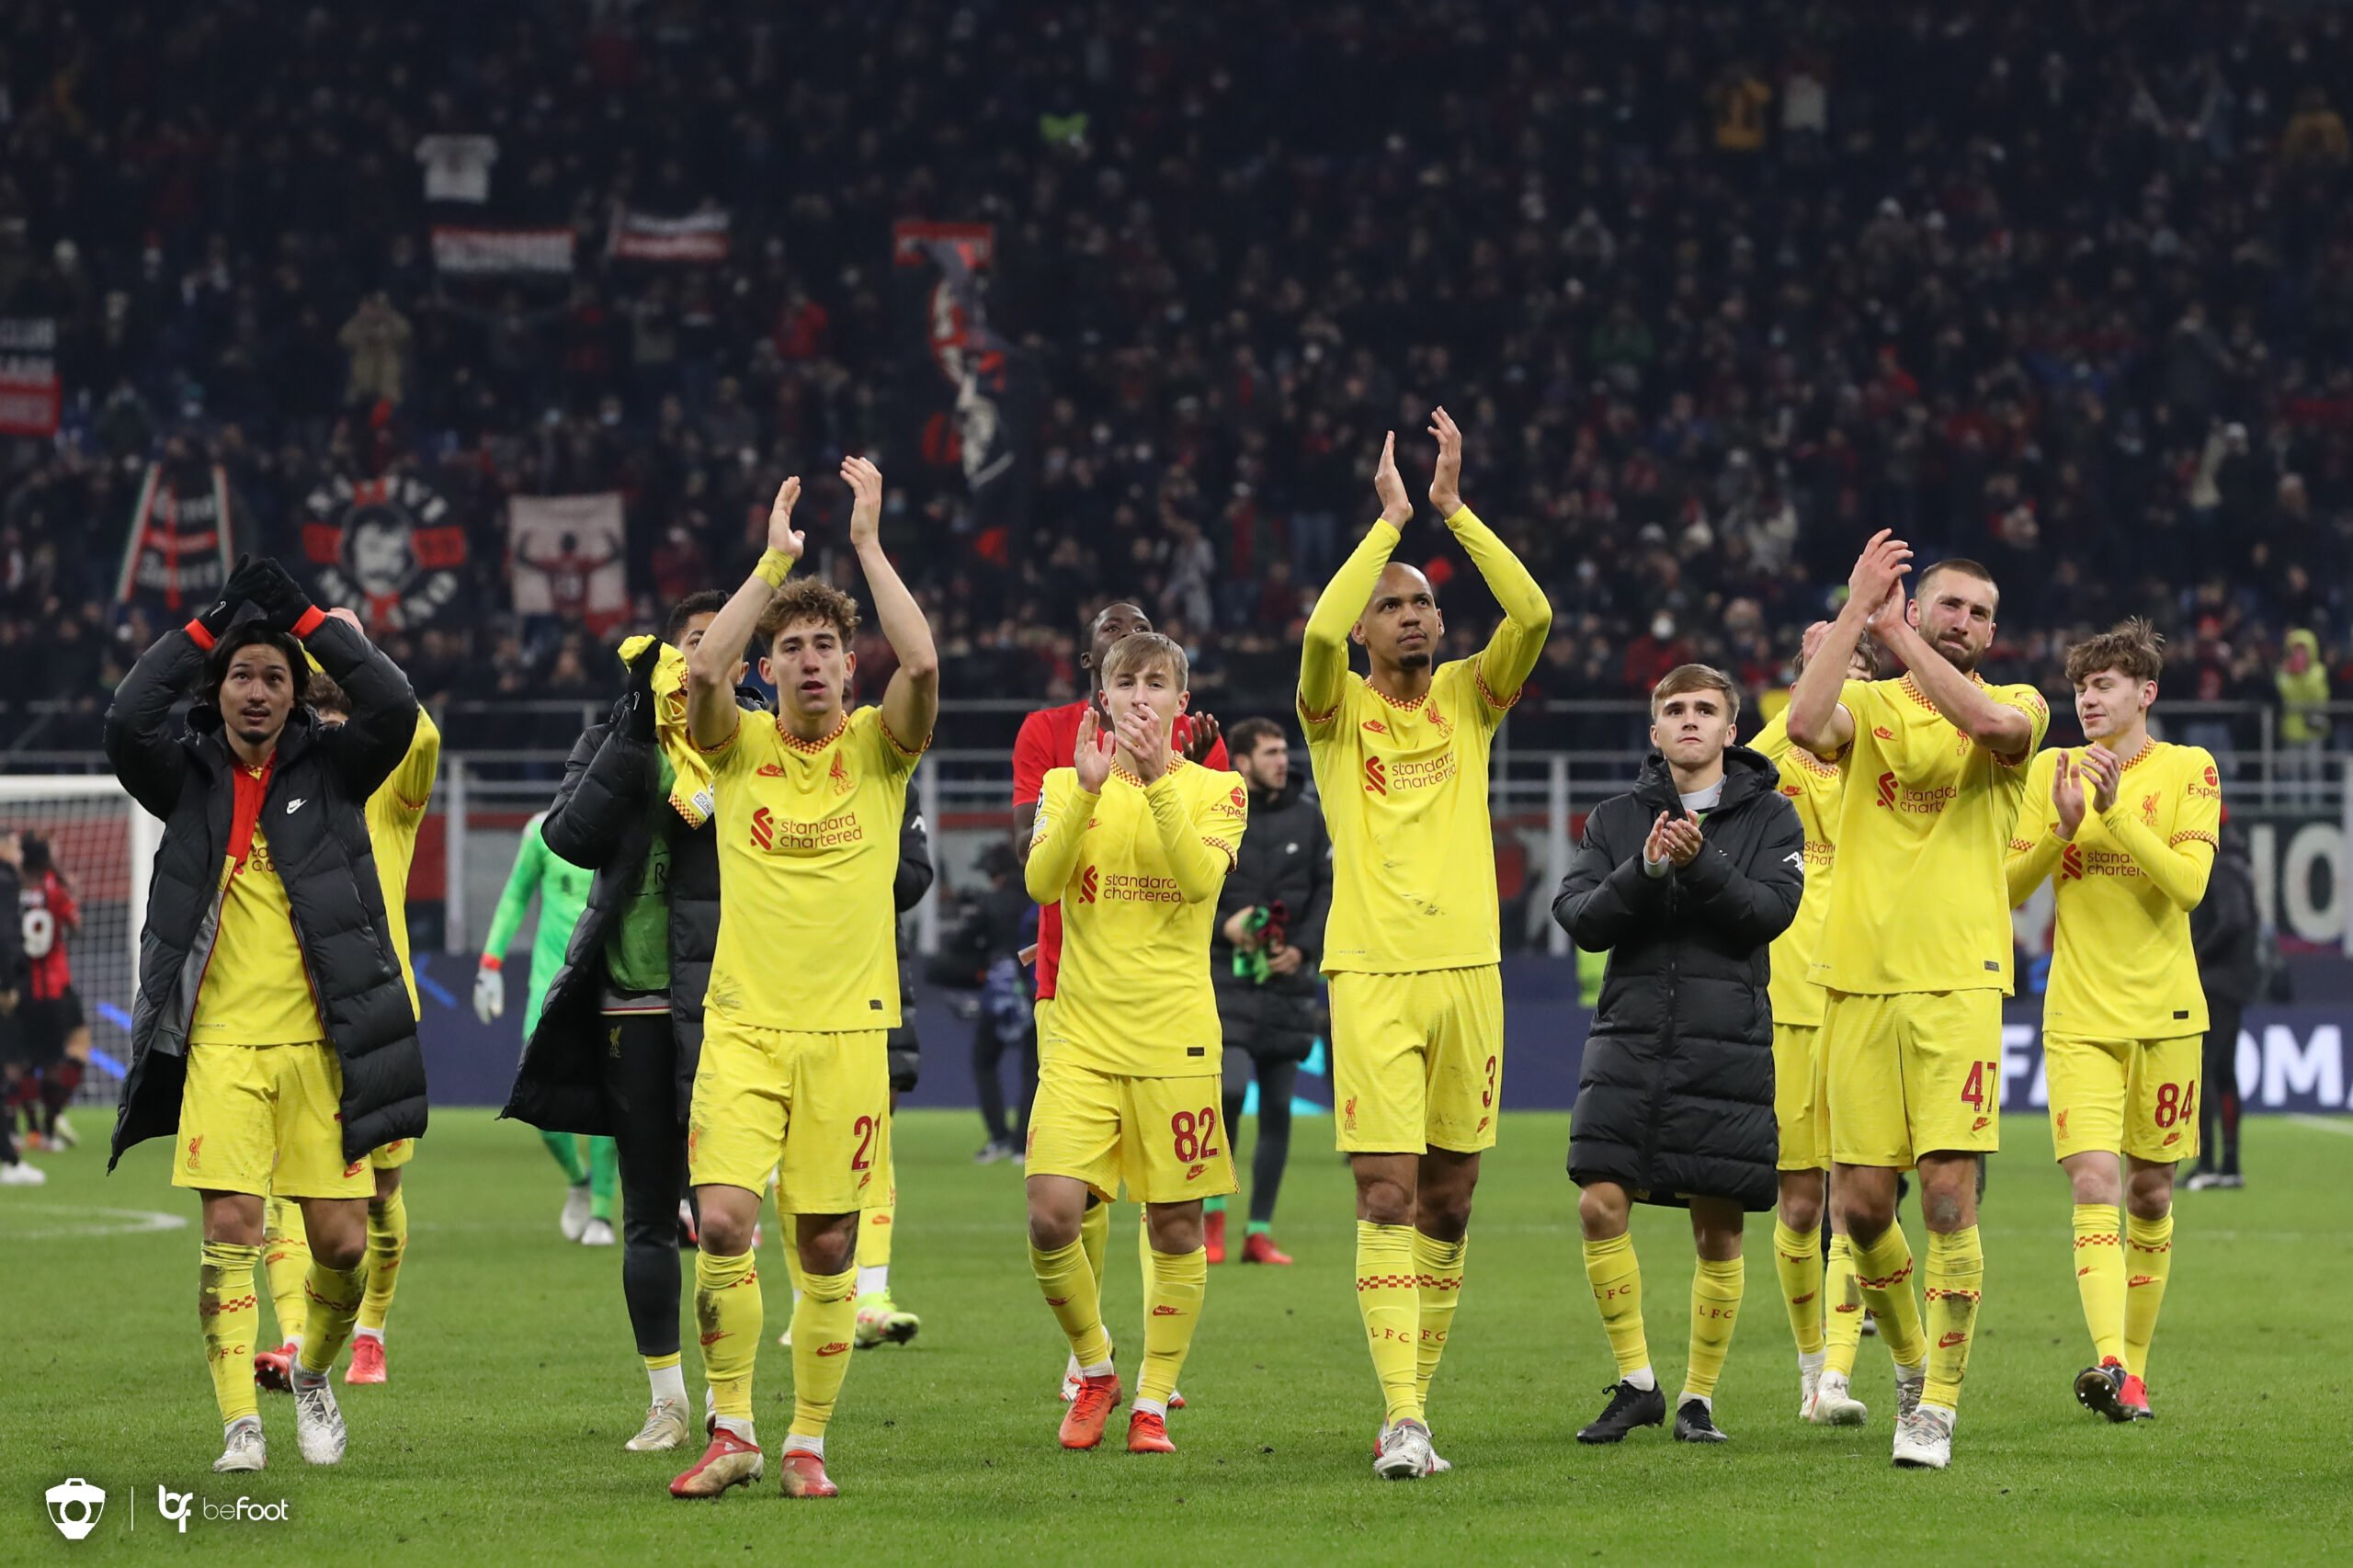 Vainqueur du Milan AC, Liverpool entre dans l’histoire de la Ligue des champions